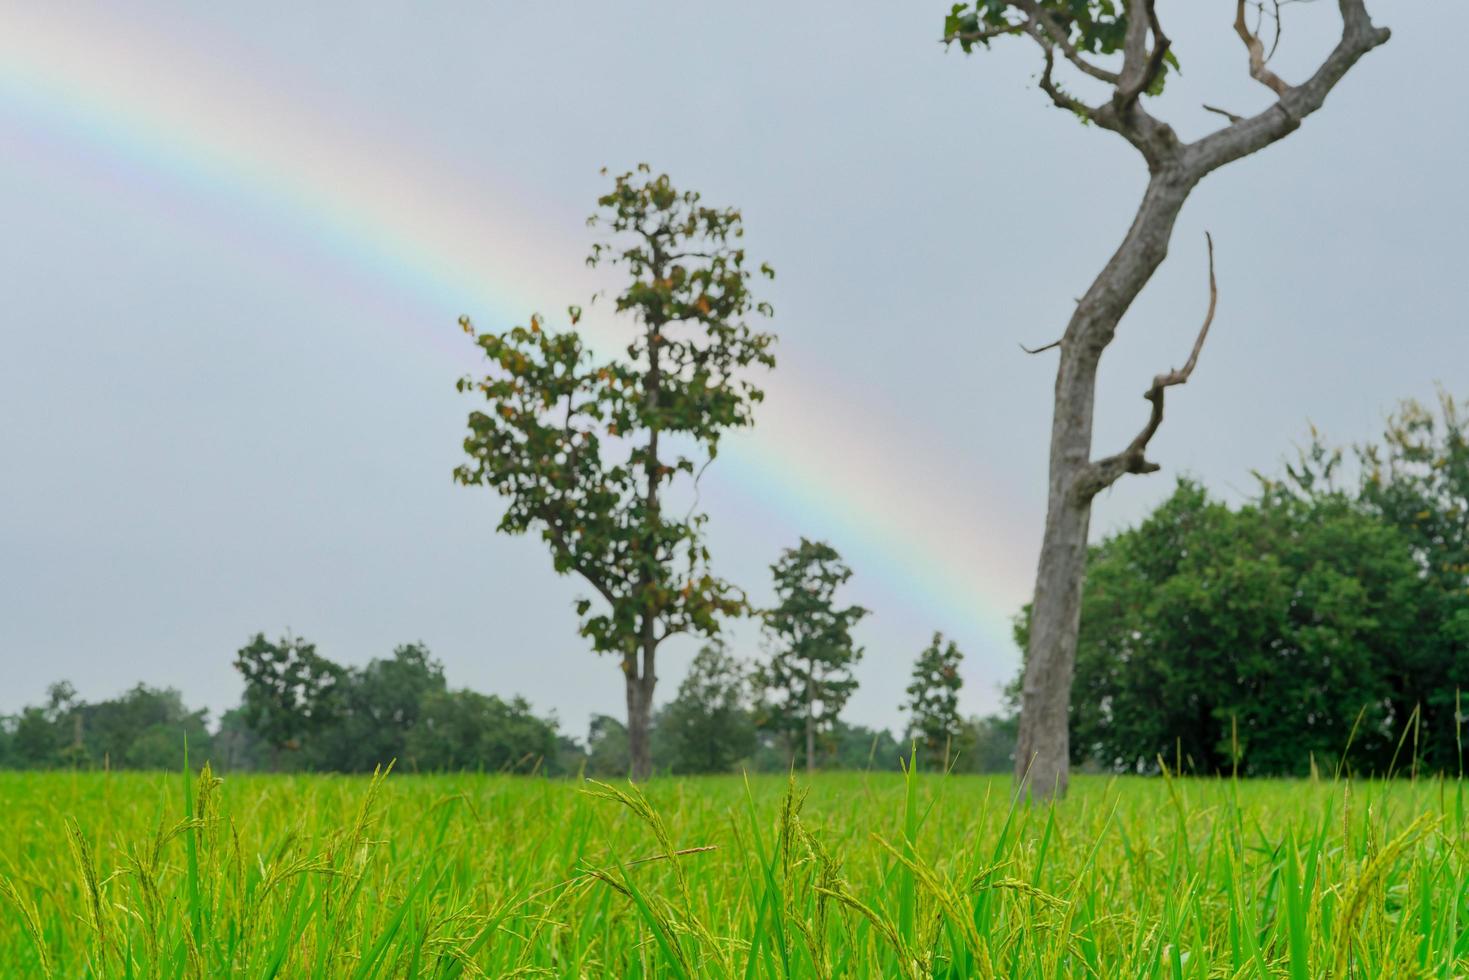 plantation de riz. rizière verte. l'agriculture rizicole. rizière verte. culture de rizière semée de paddy. le paysage de la ferme agricole avec arc-en-ciel sur le ciel pendant la saison des pluies. photo